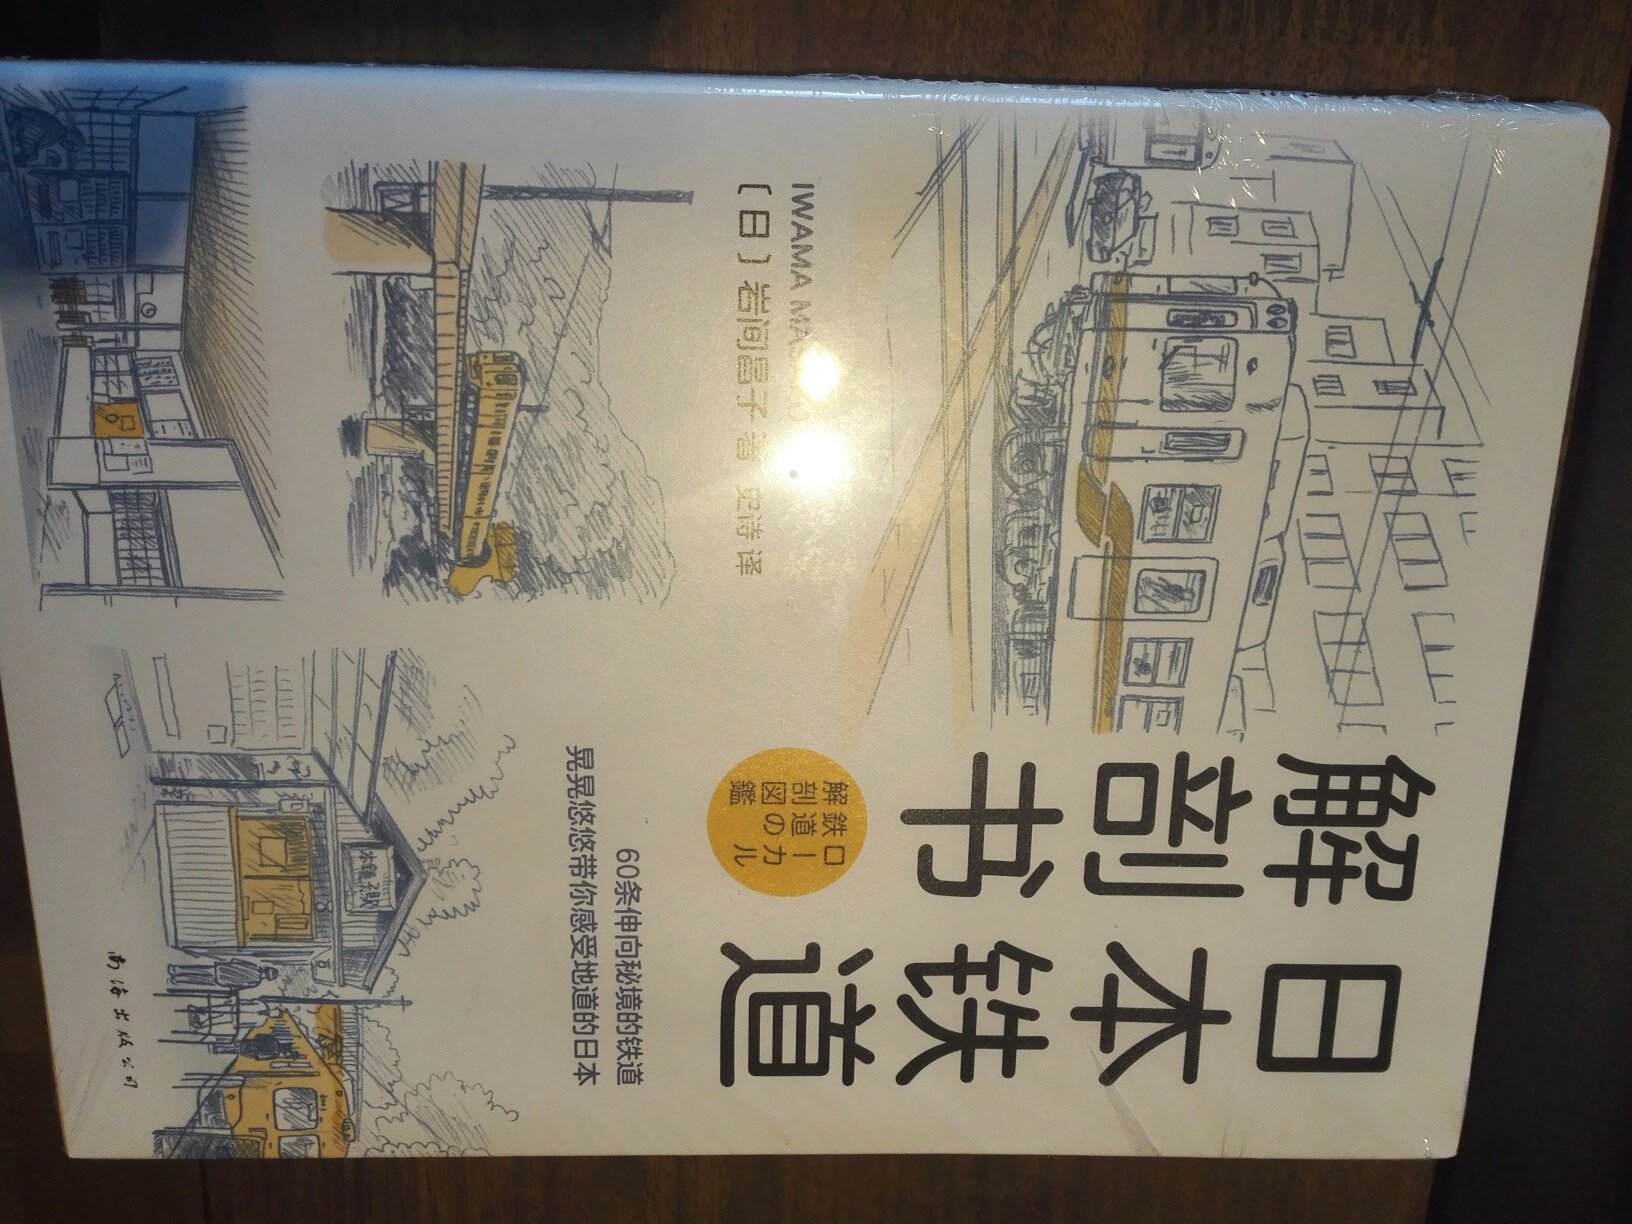 图画形式的介绍了日本60条铁道线。铁路迷应该会喜欢。书有塑封，纸张较好